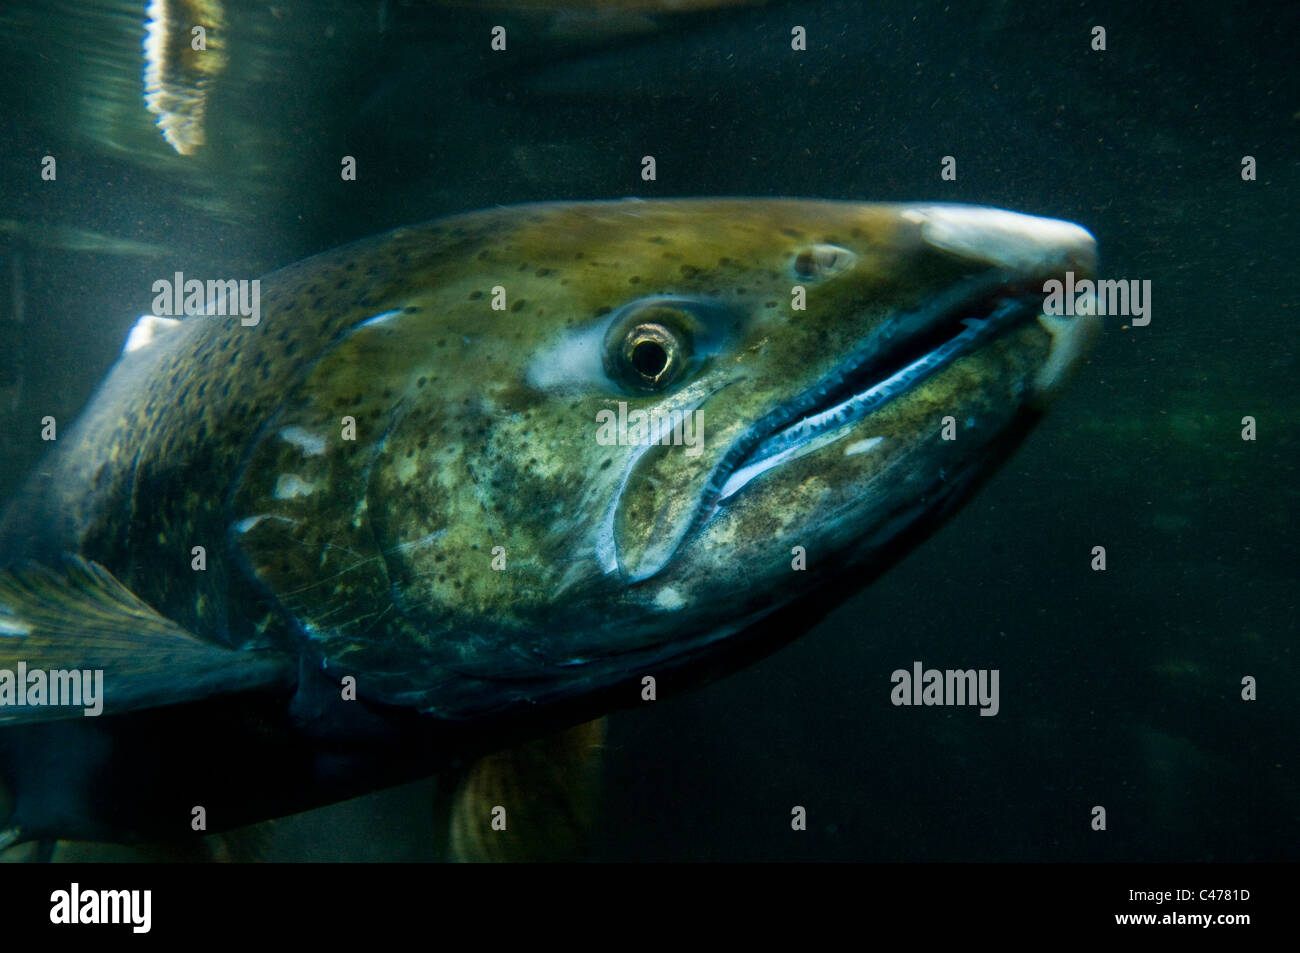 Adult Chinook salmon (Oncorhynchus tshawytscha) Stock Photo